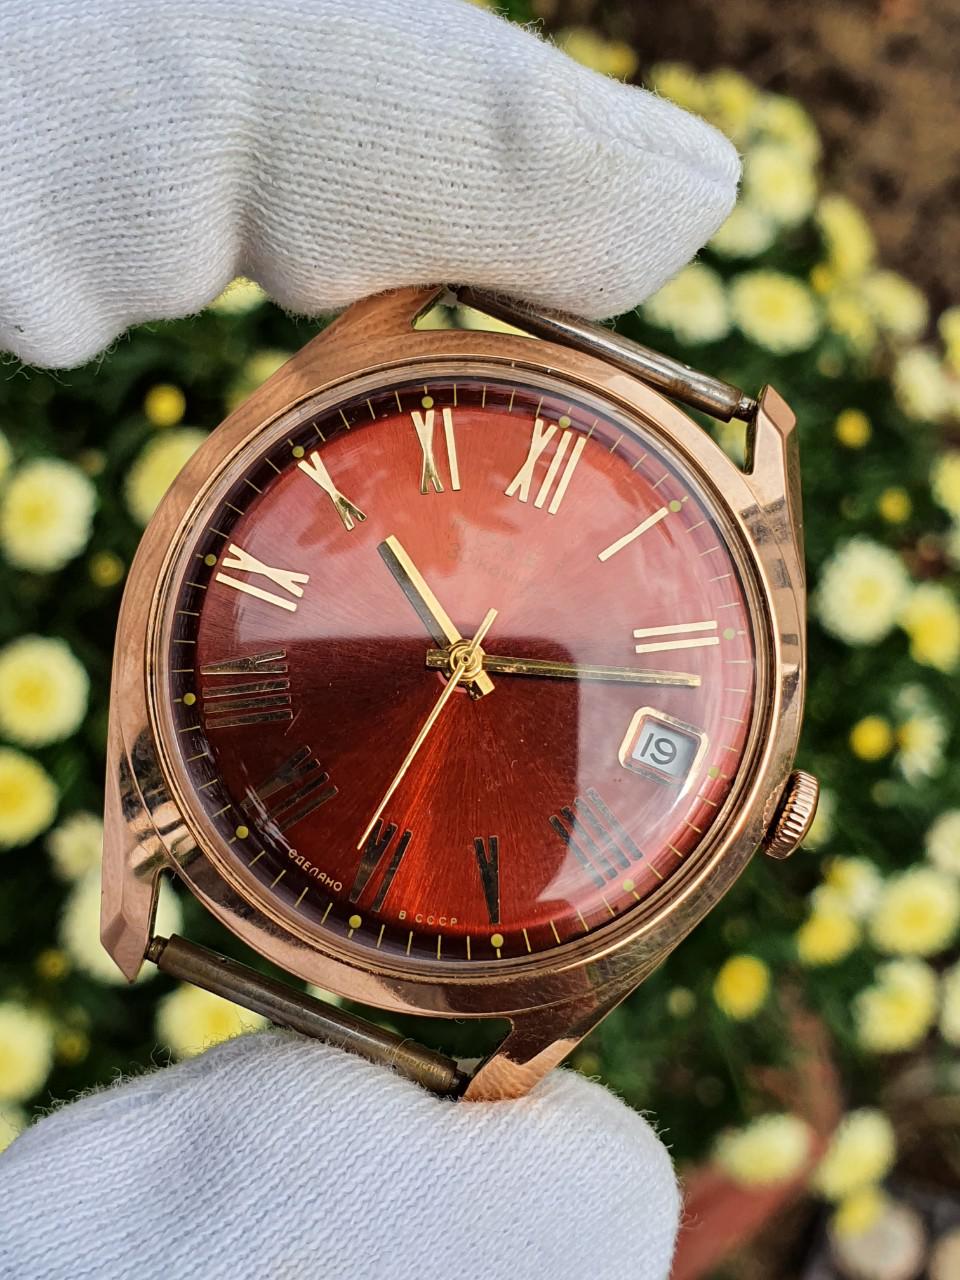 Đồng hồ Poljot 23 đỏ huyết siêu đẹp vàng đúc nguyên khối automatic